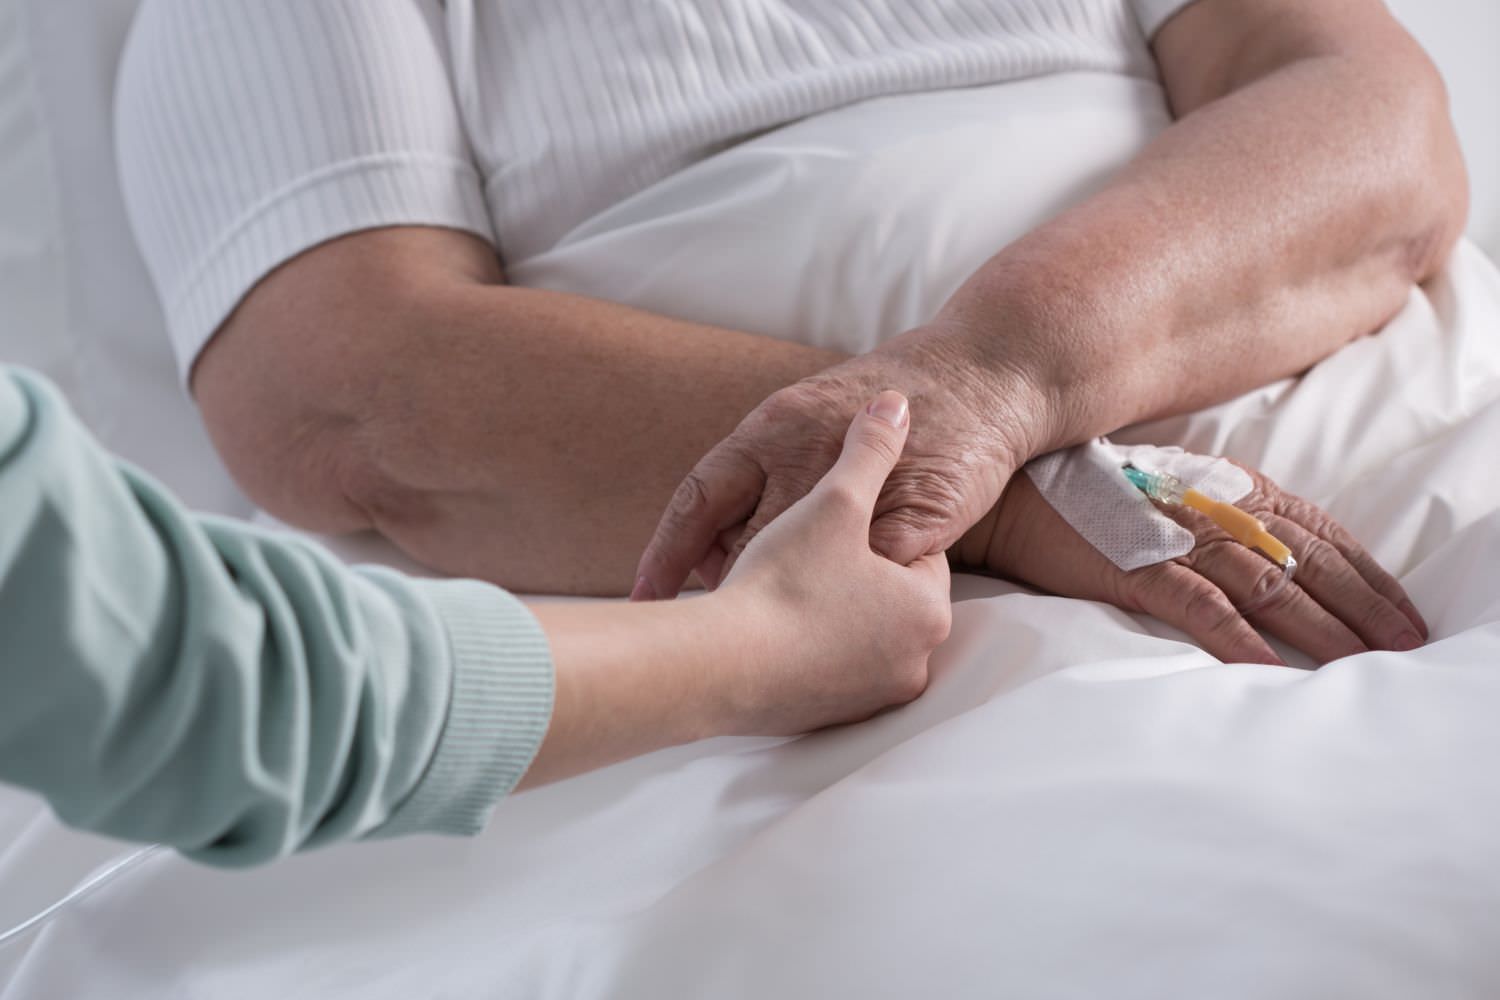 Bild zeigt: Junge Frau hält die Hand einer kranken Frau im Krankenahaus